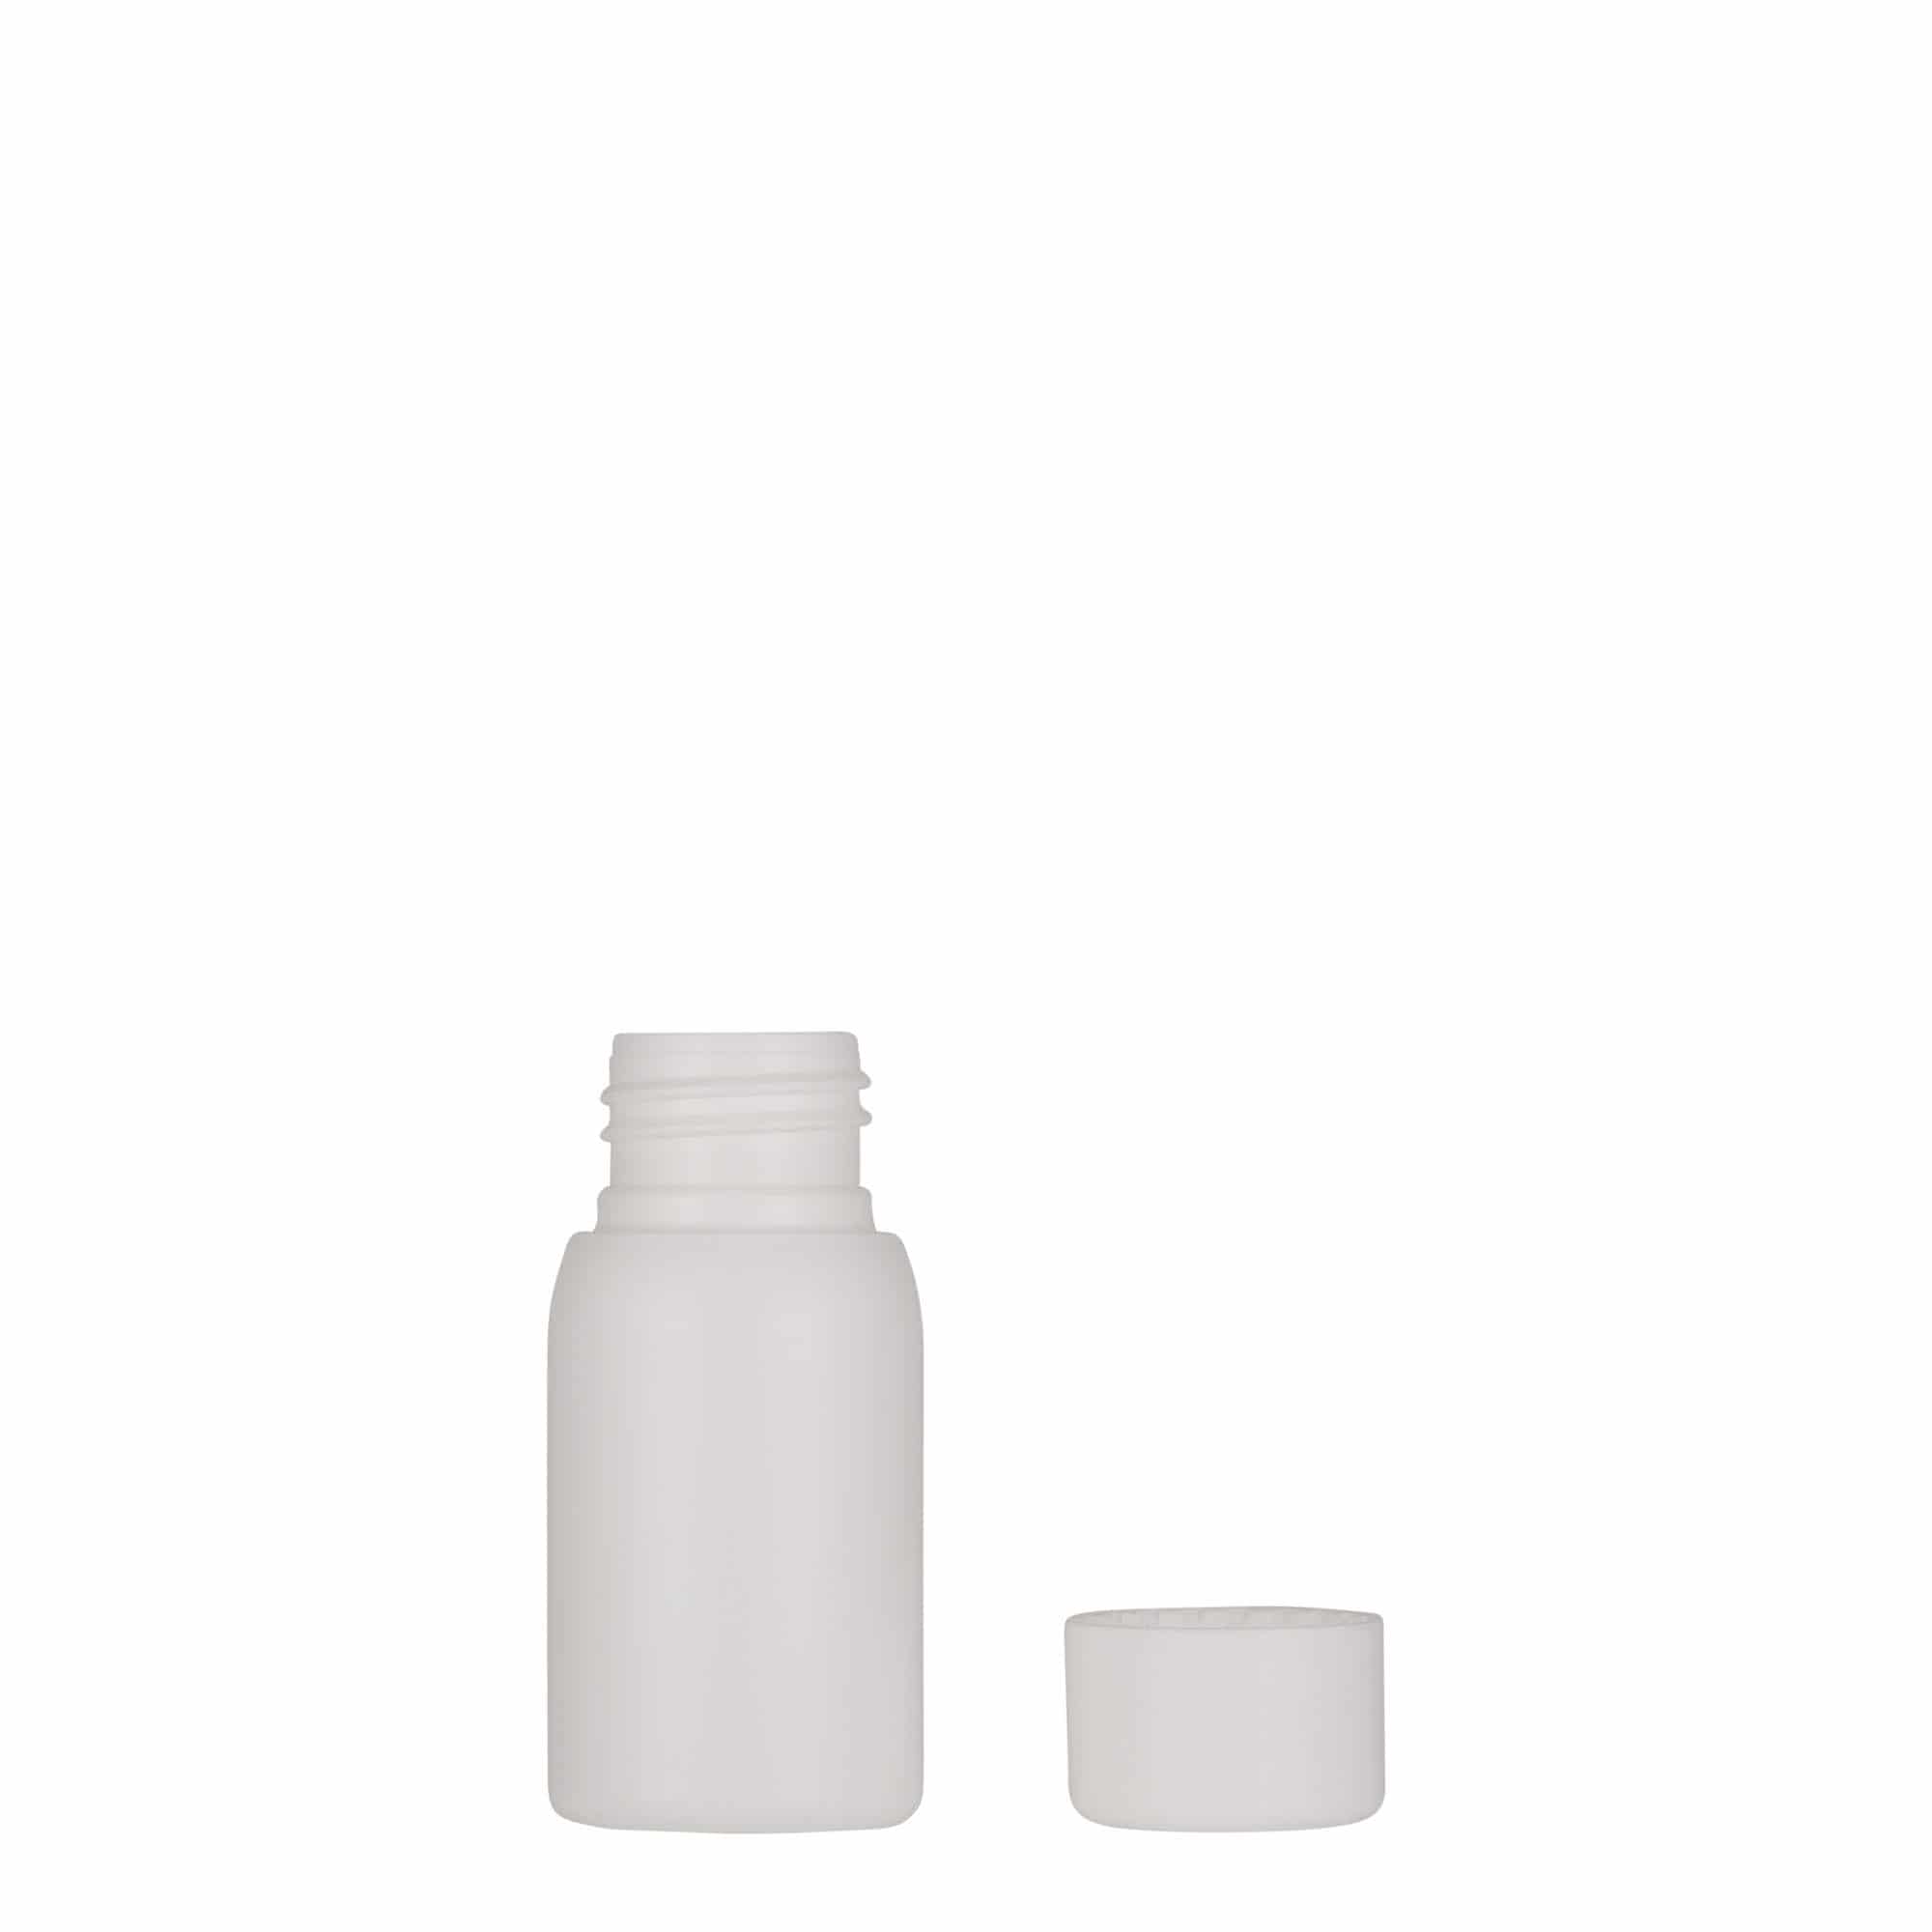 30 ml plastic bottle 'Tuffy', HDPE, white, closure: GPI 24/410